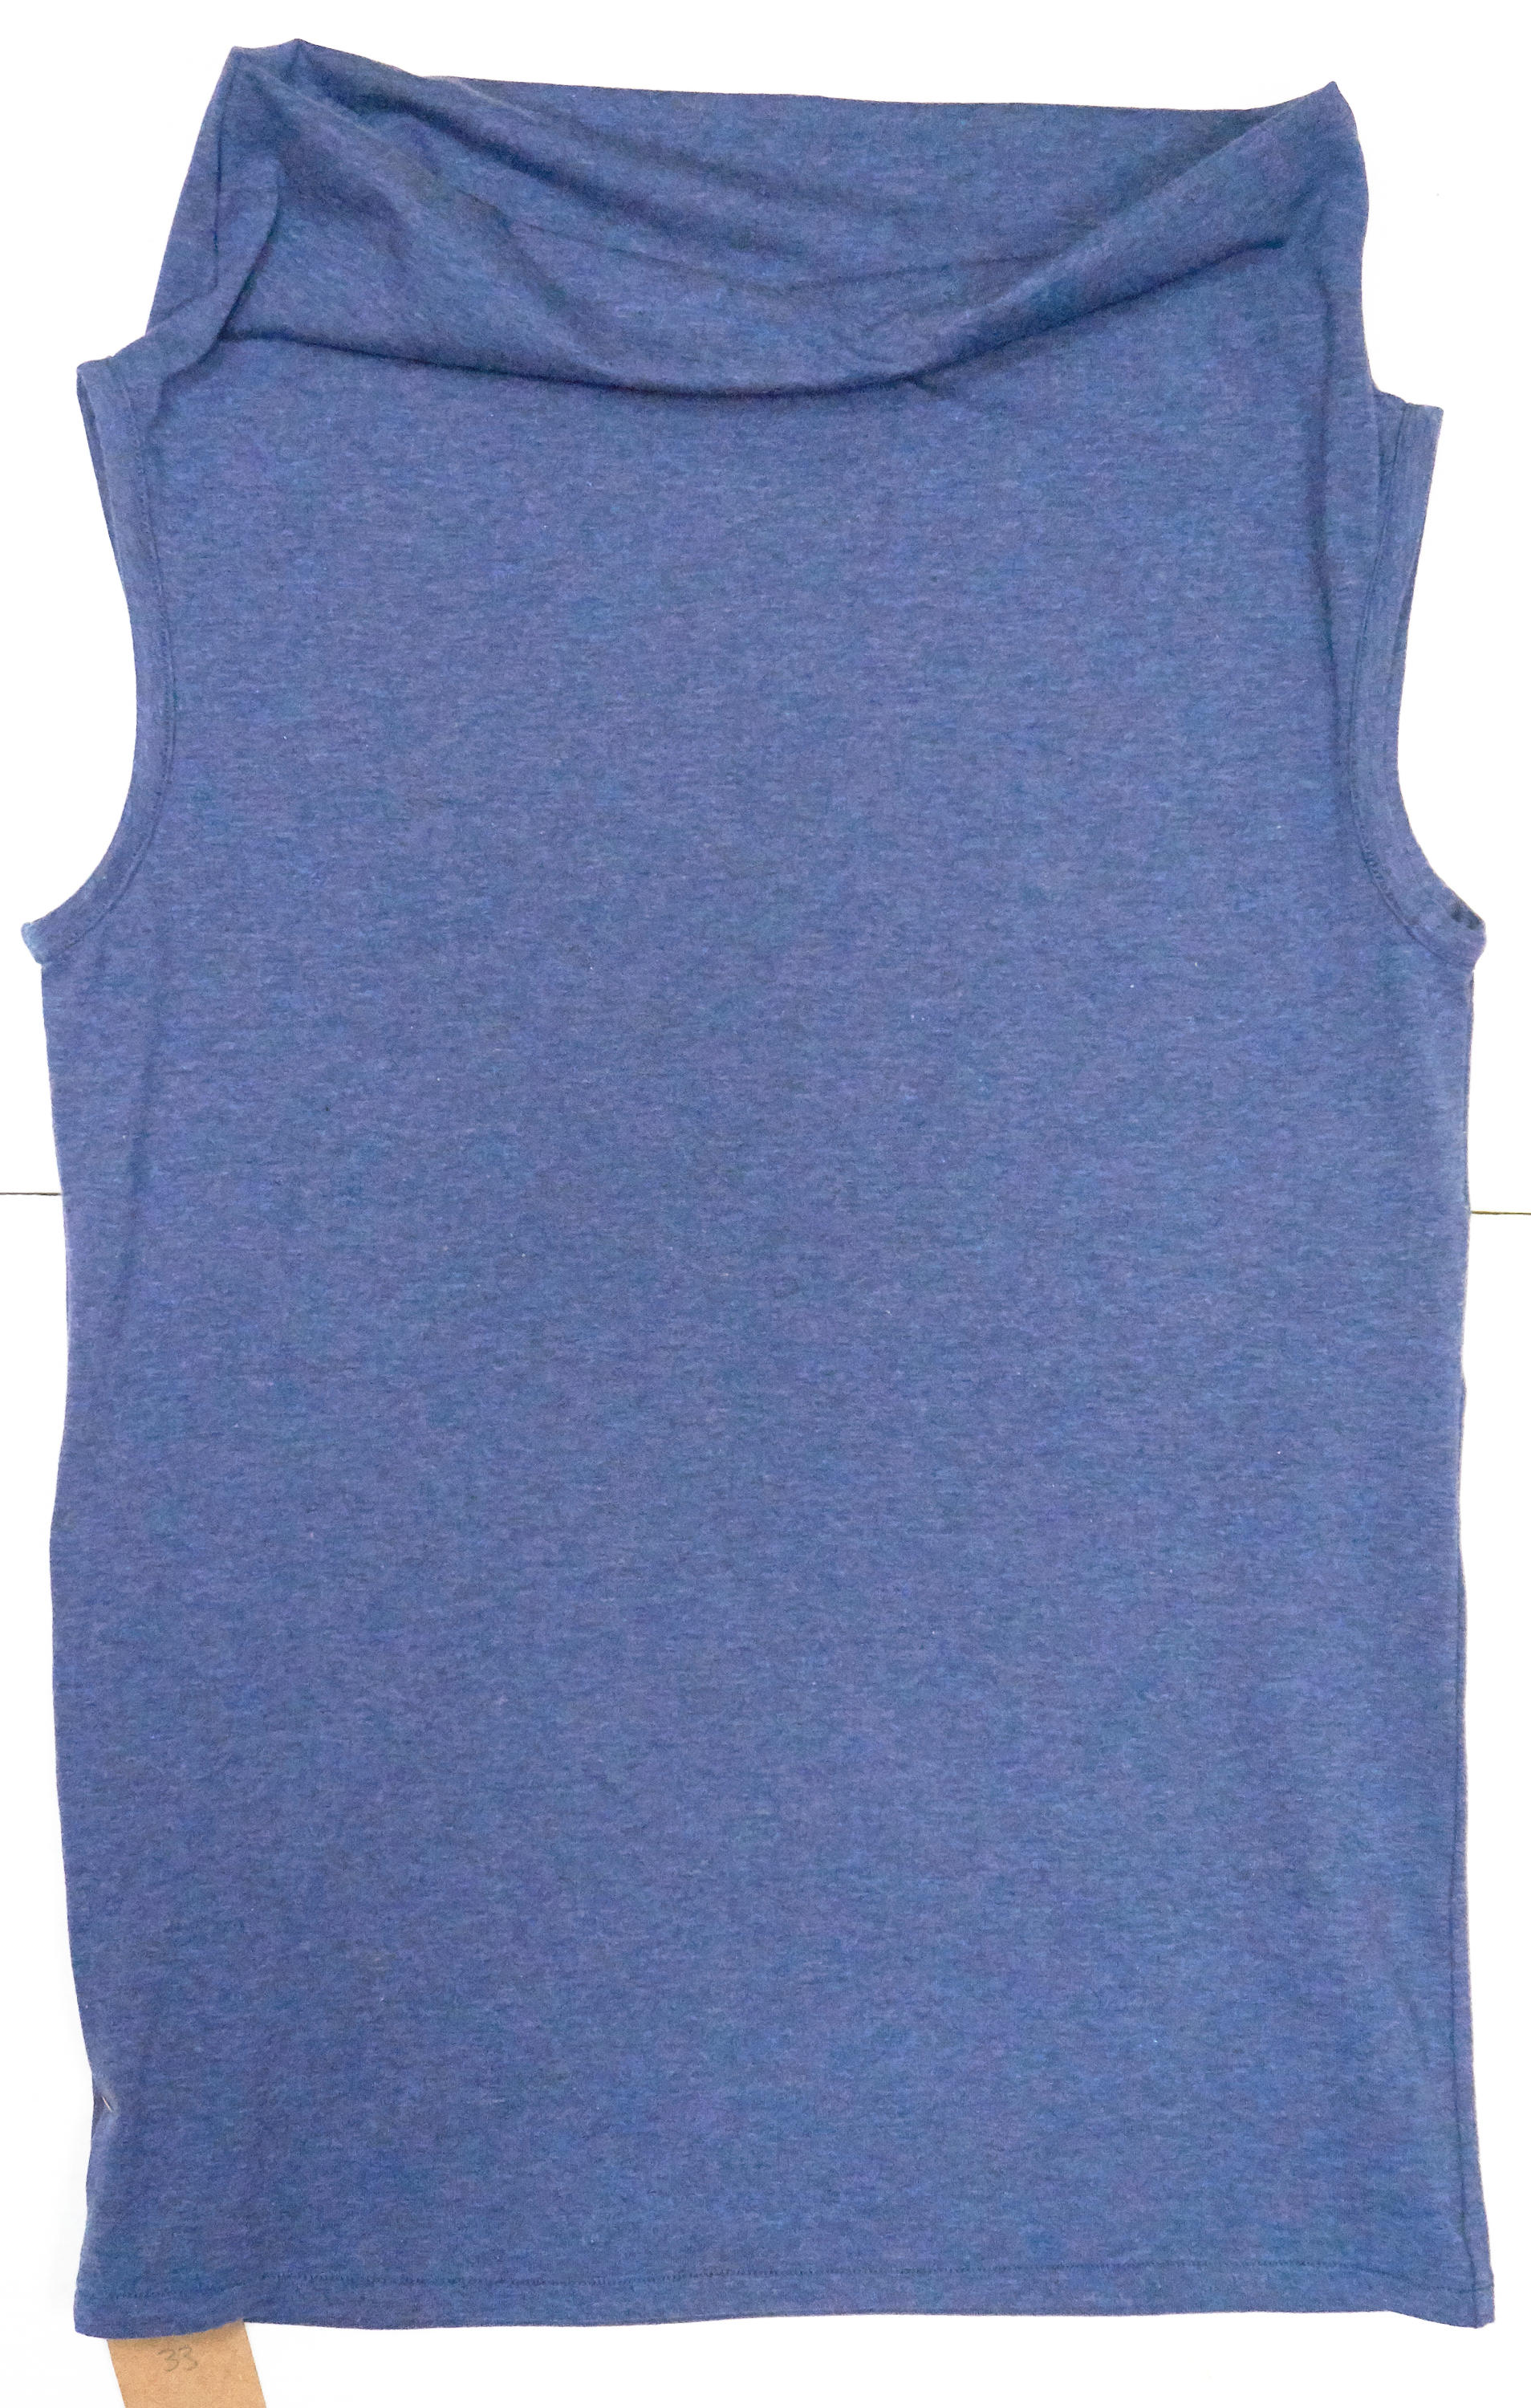 Maglietta taglia unica in cotone biologico elasticizzato in blu melange